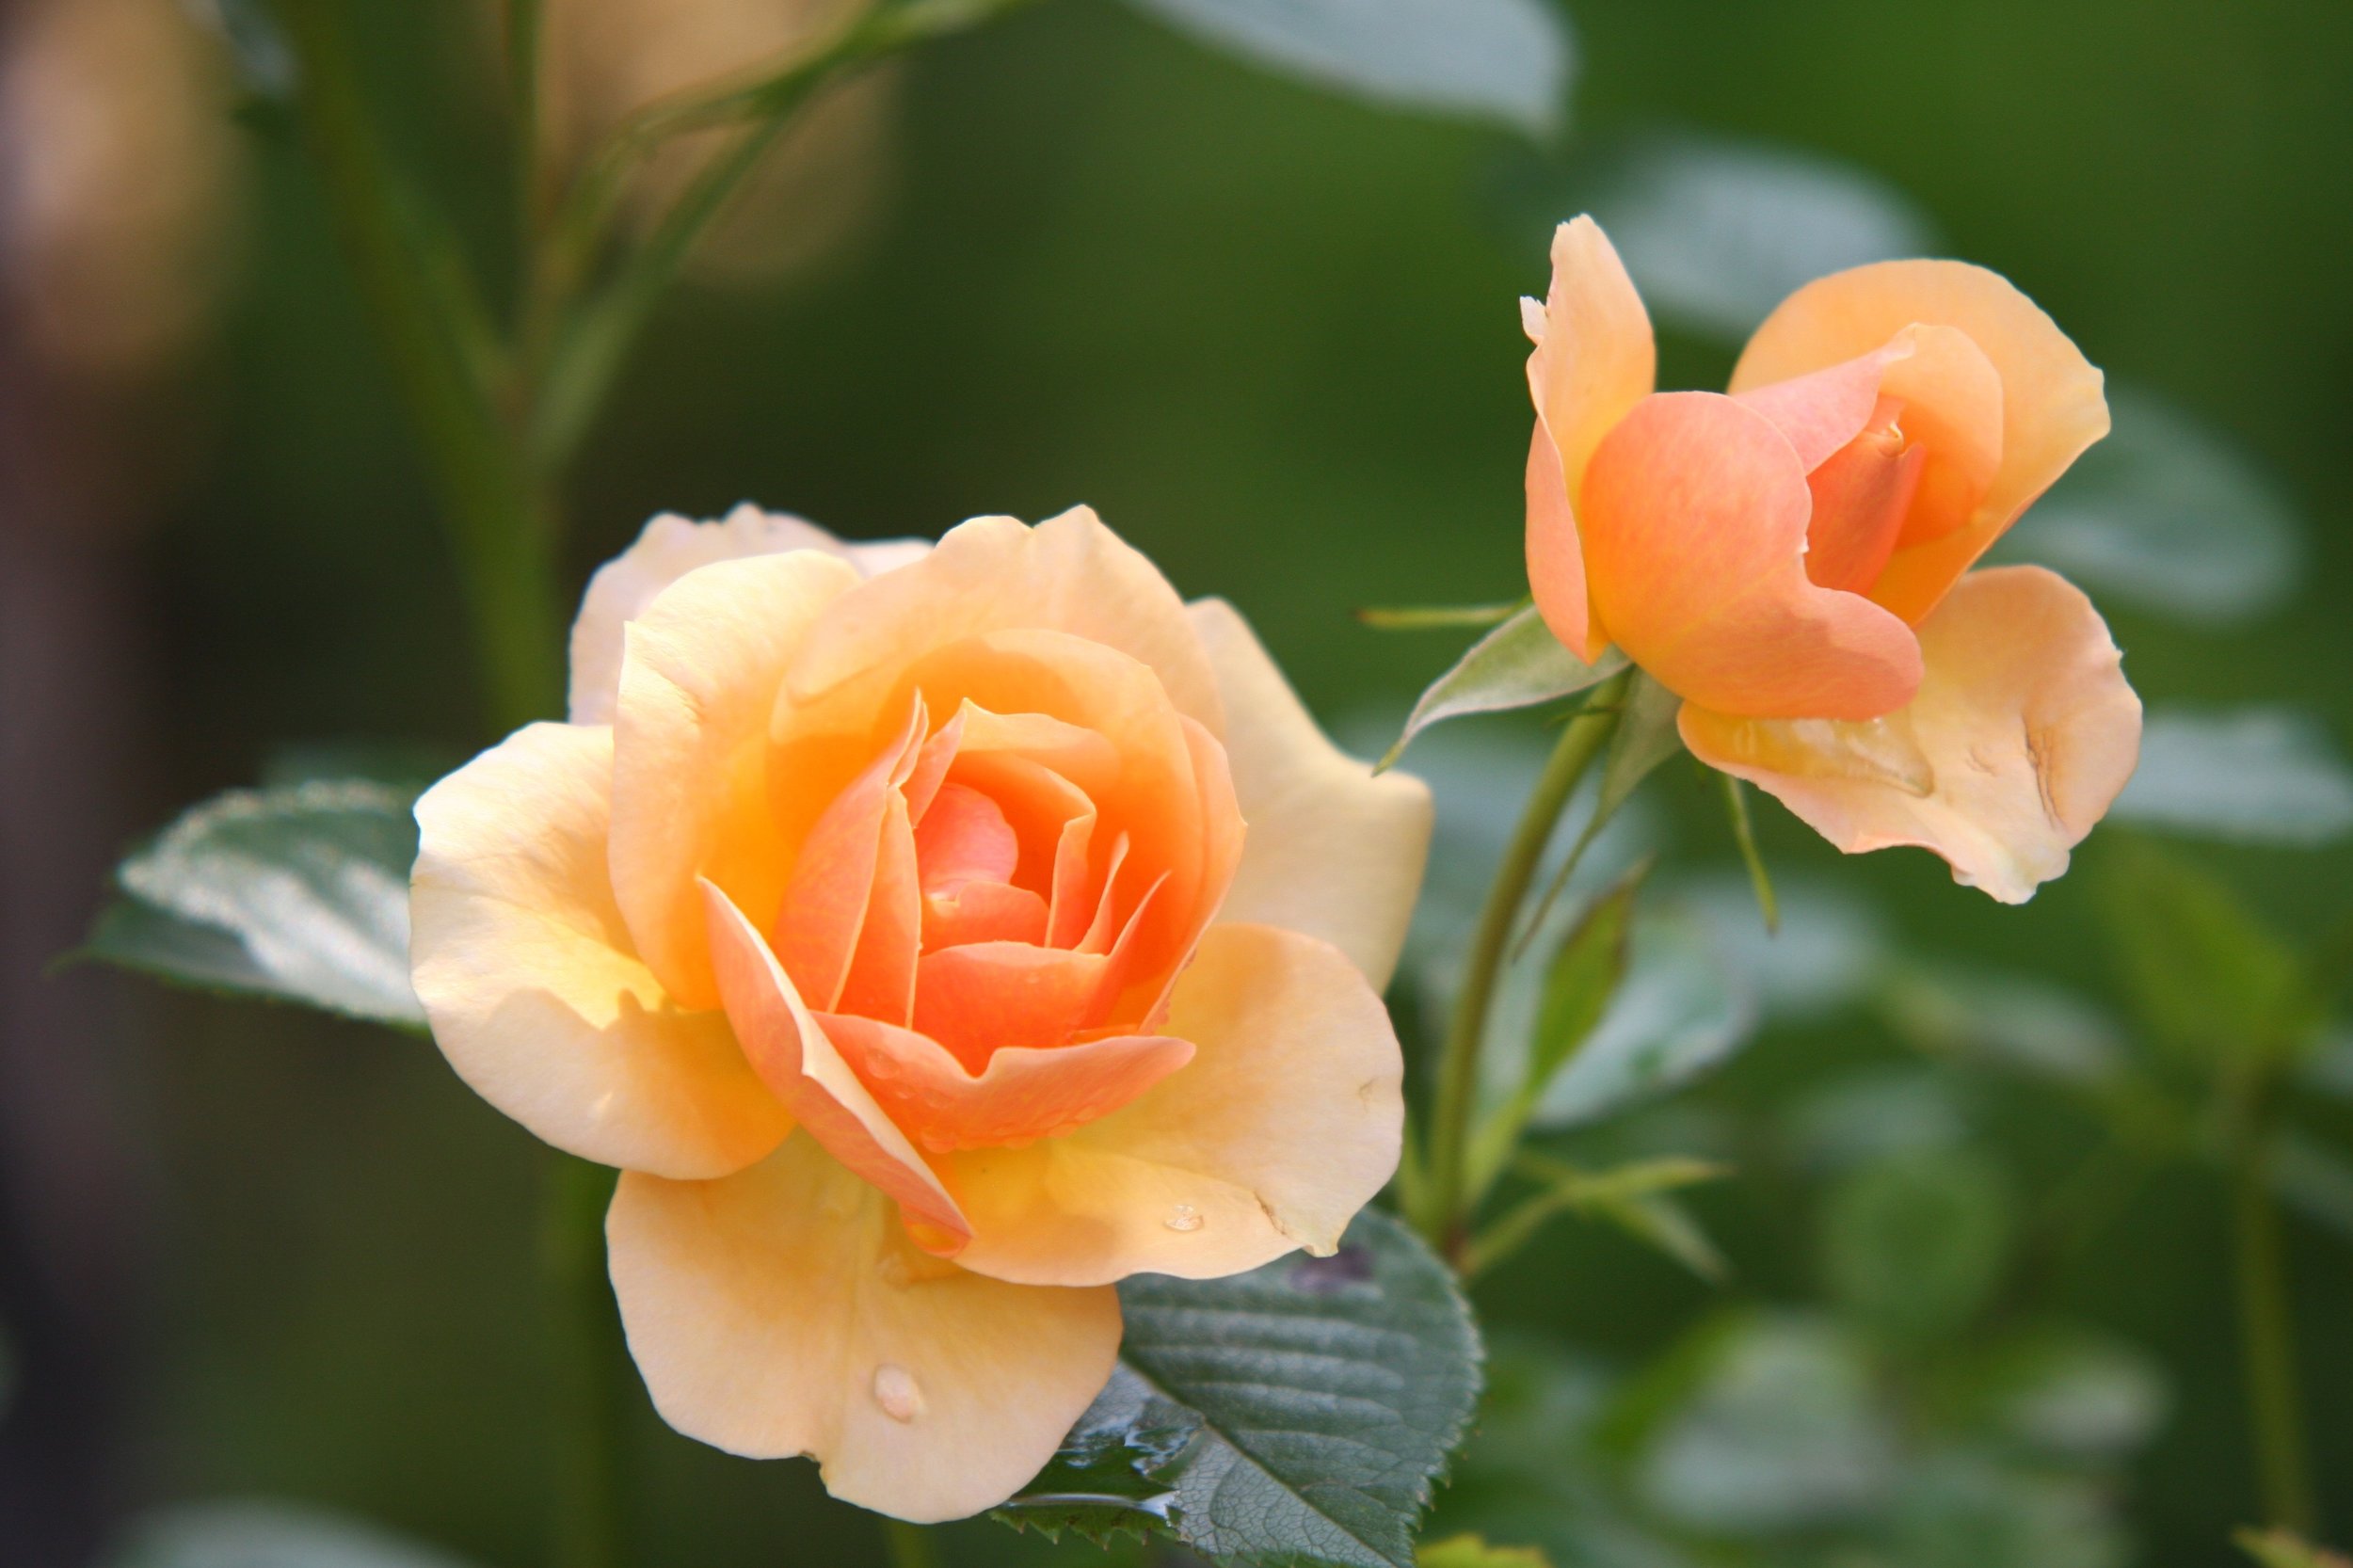 111 rose-flower-blossom-bloom-39517.jpeg